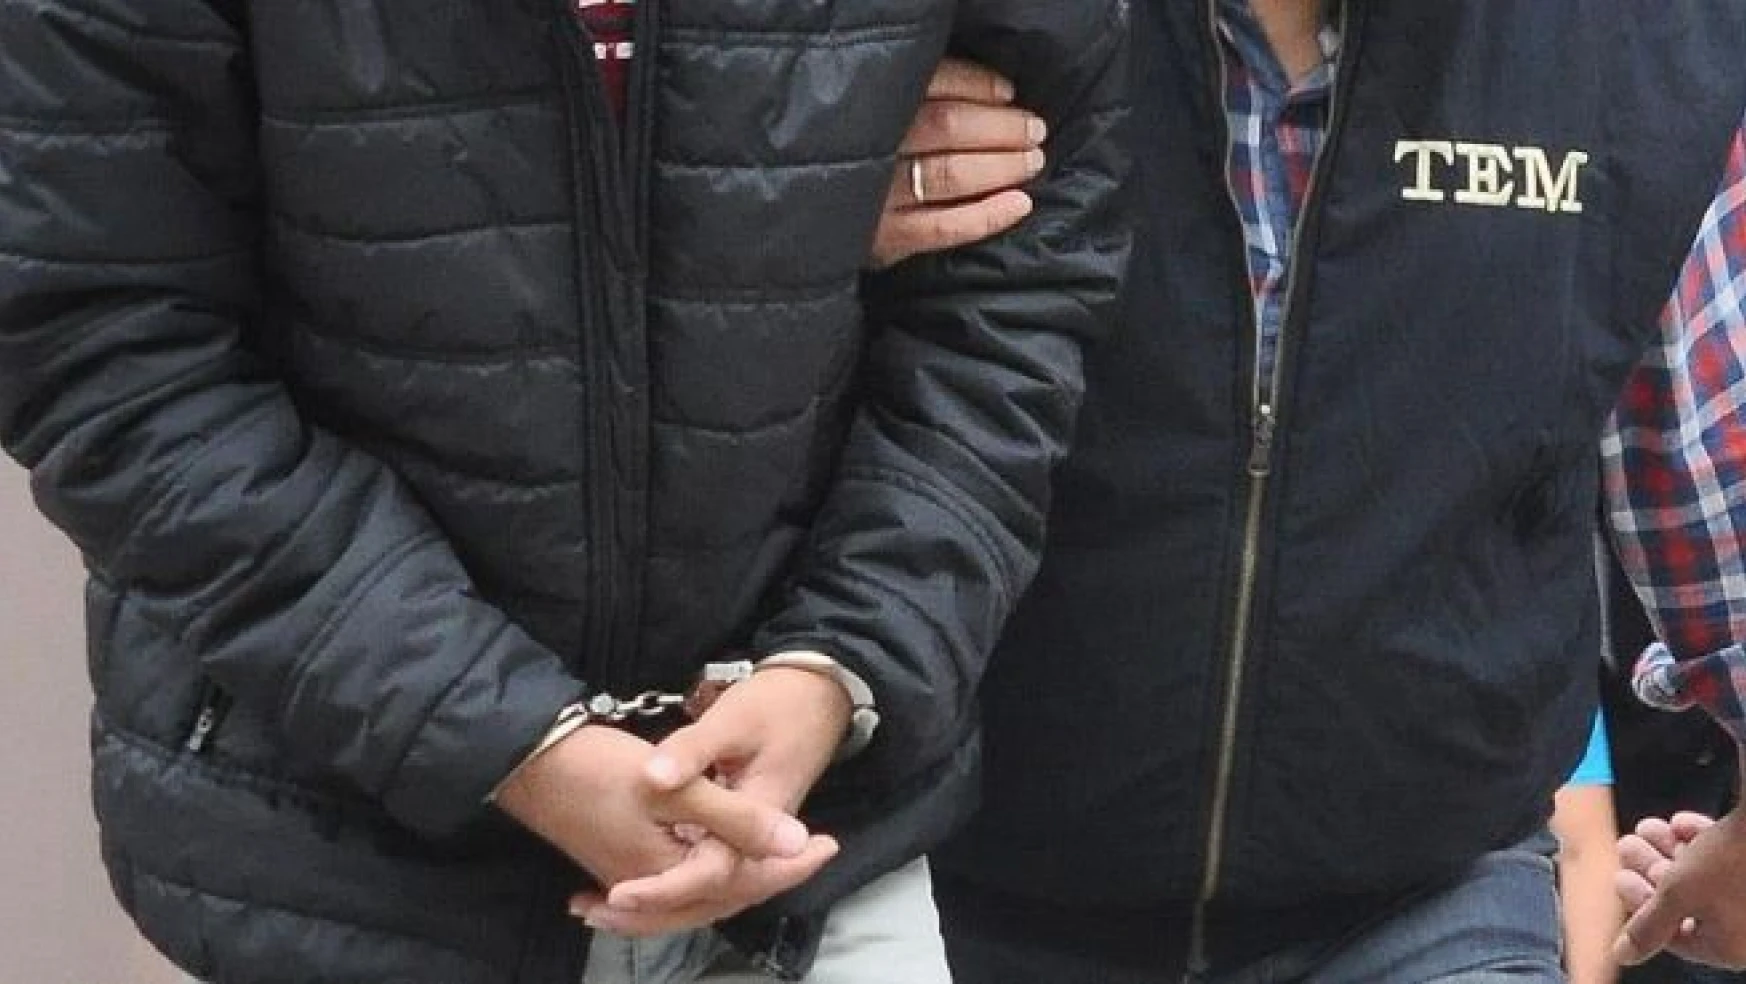 Manisa'daki FETÖ/PDY operasyonunda 4 tutuklama